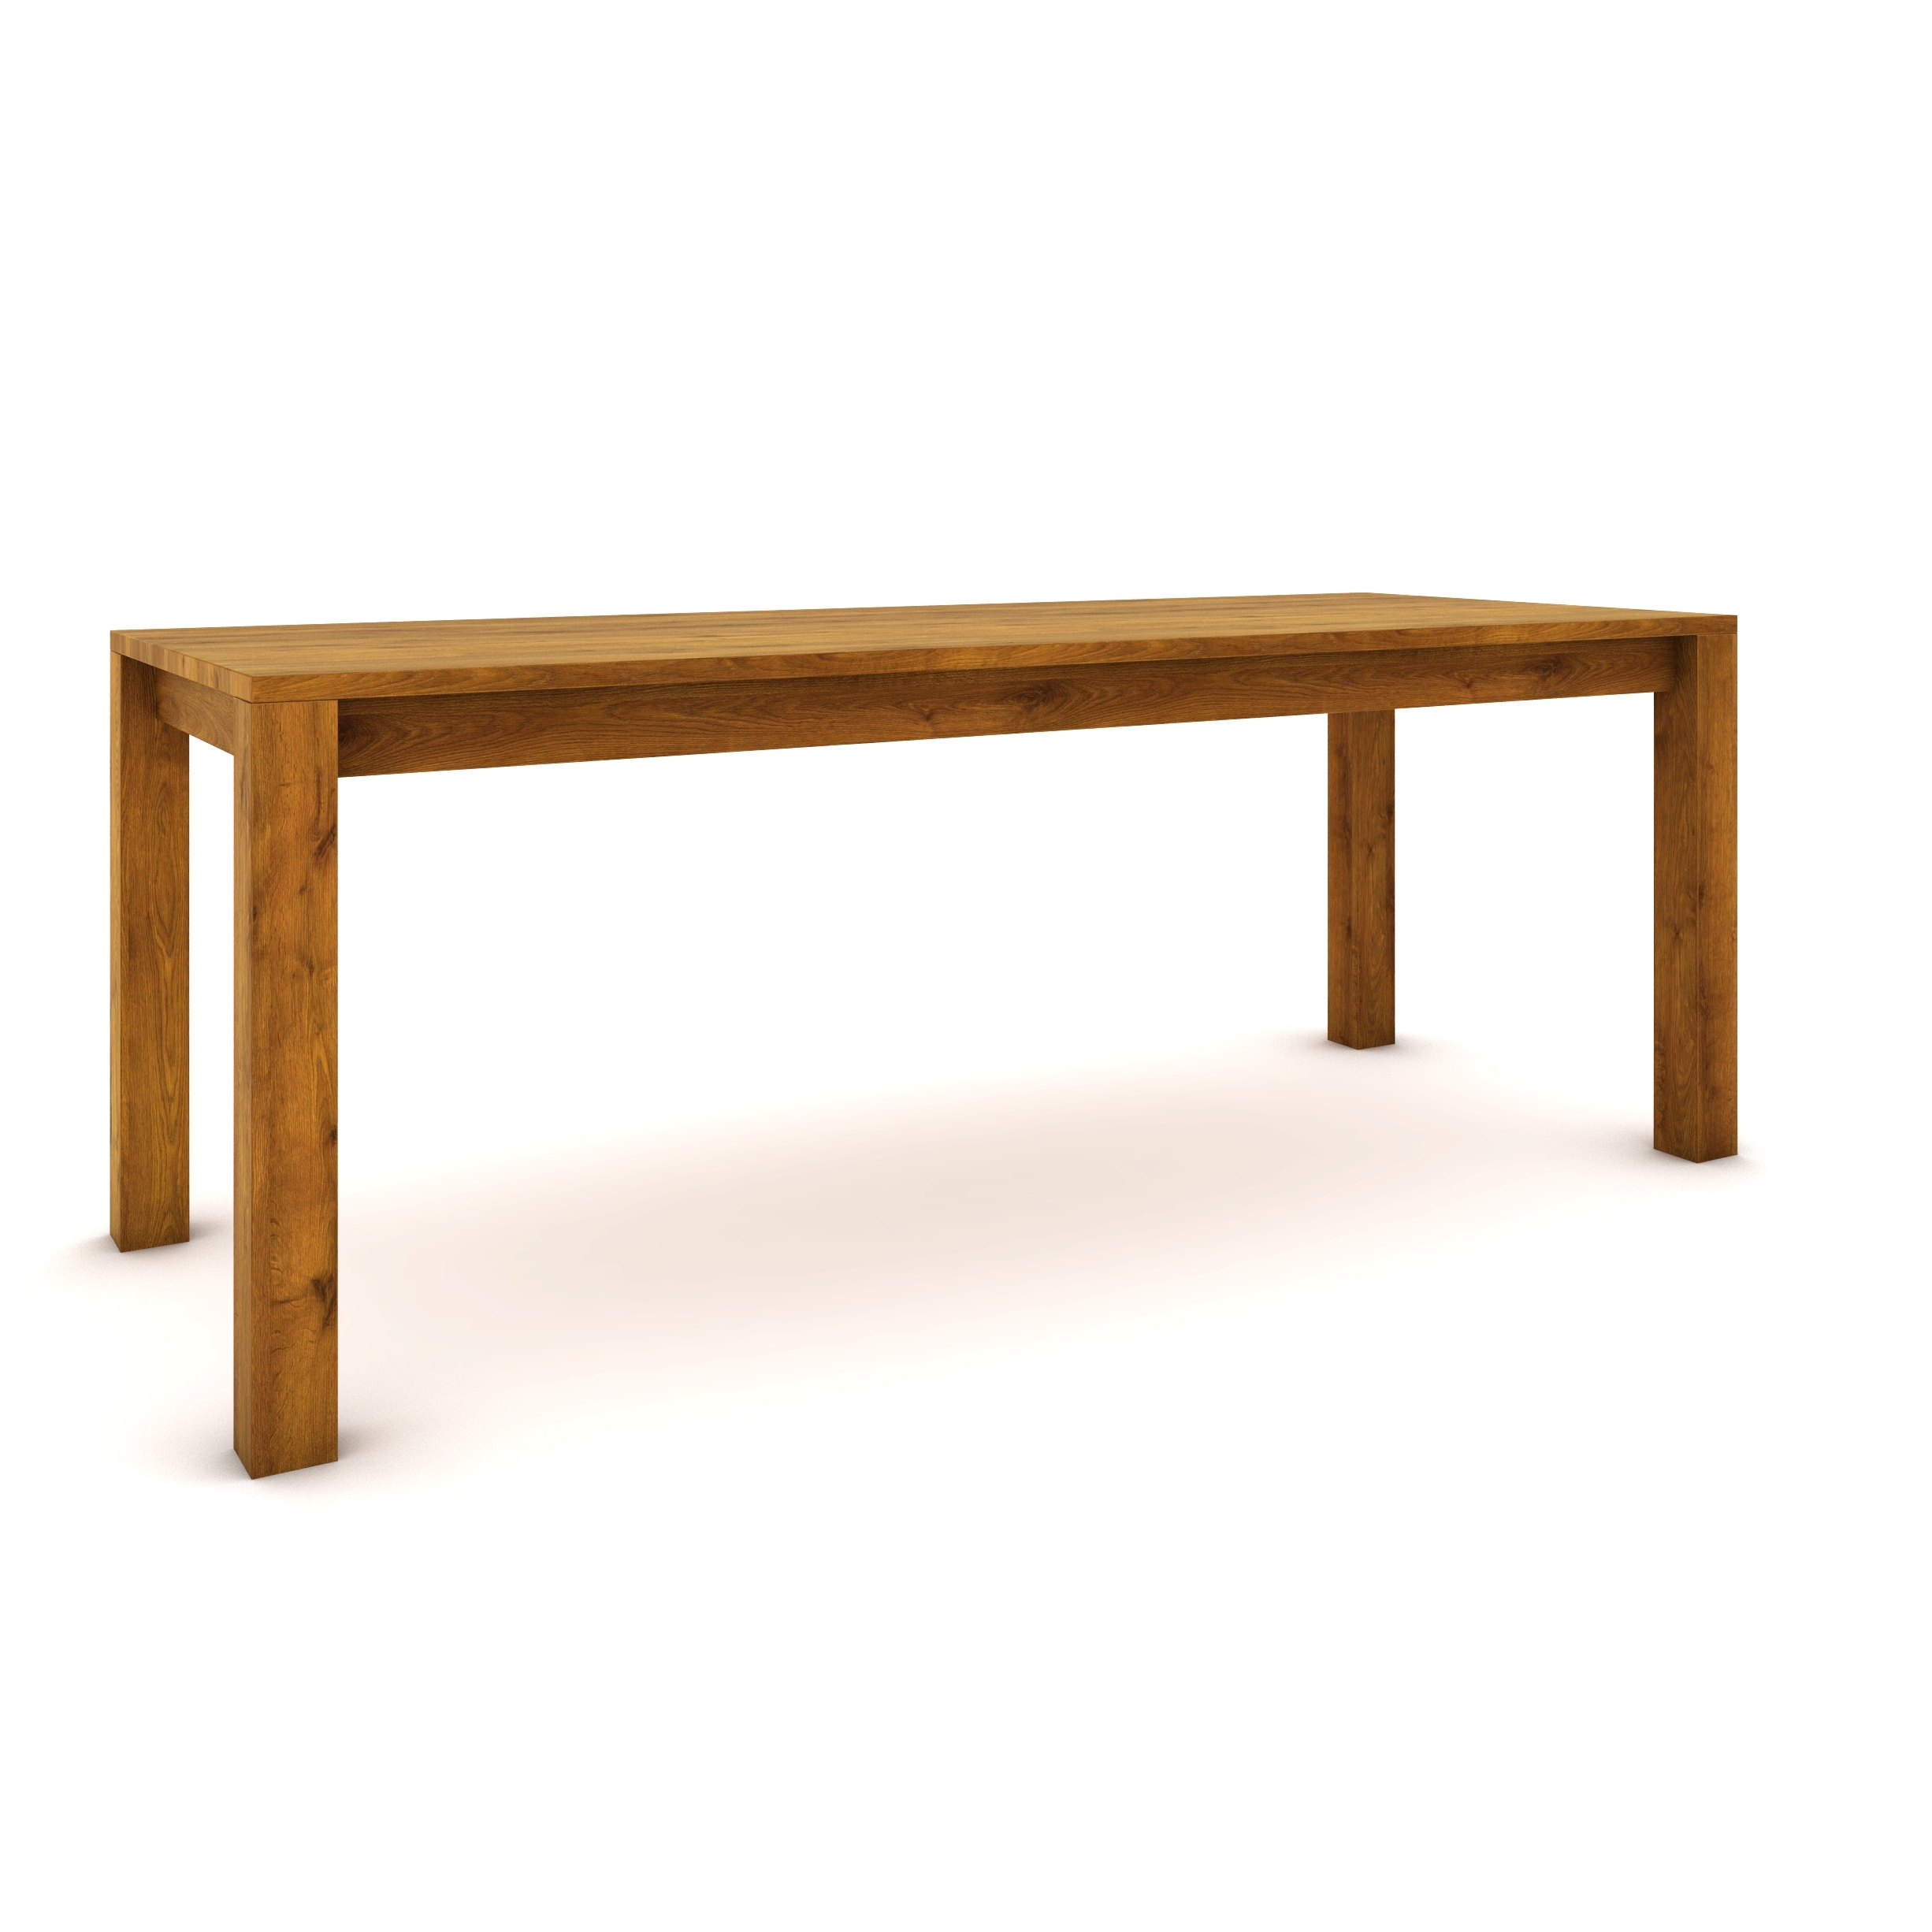 Dubový stůl 200 x 80 cm , jantarový